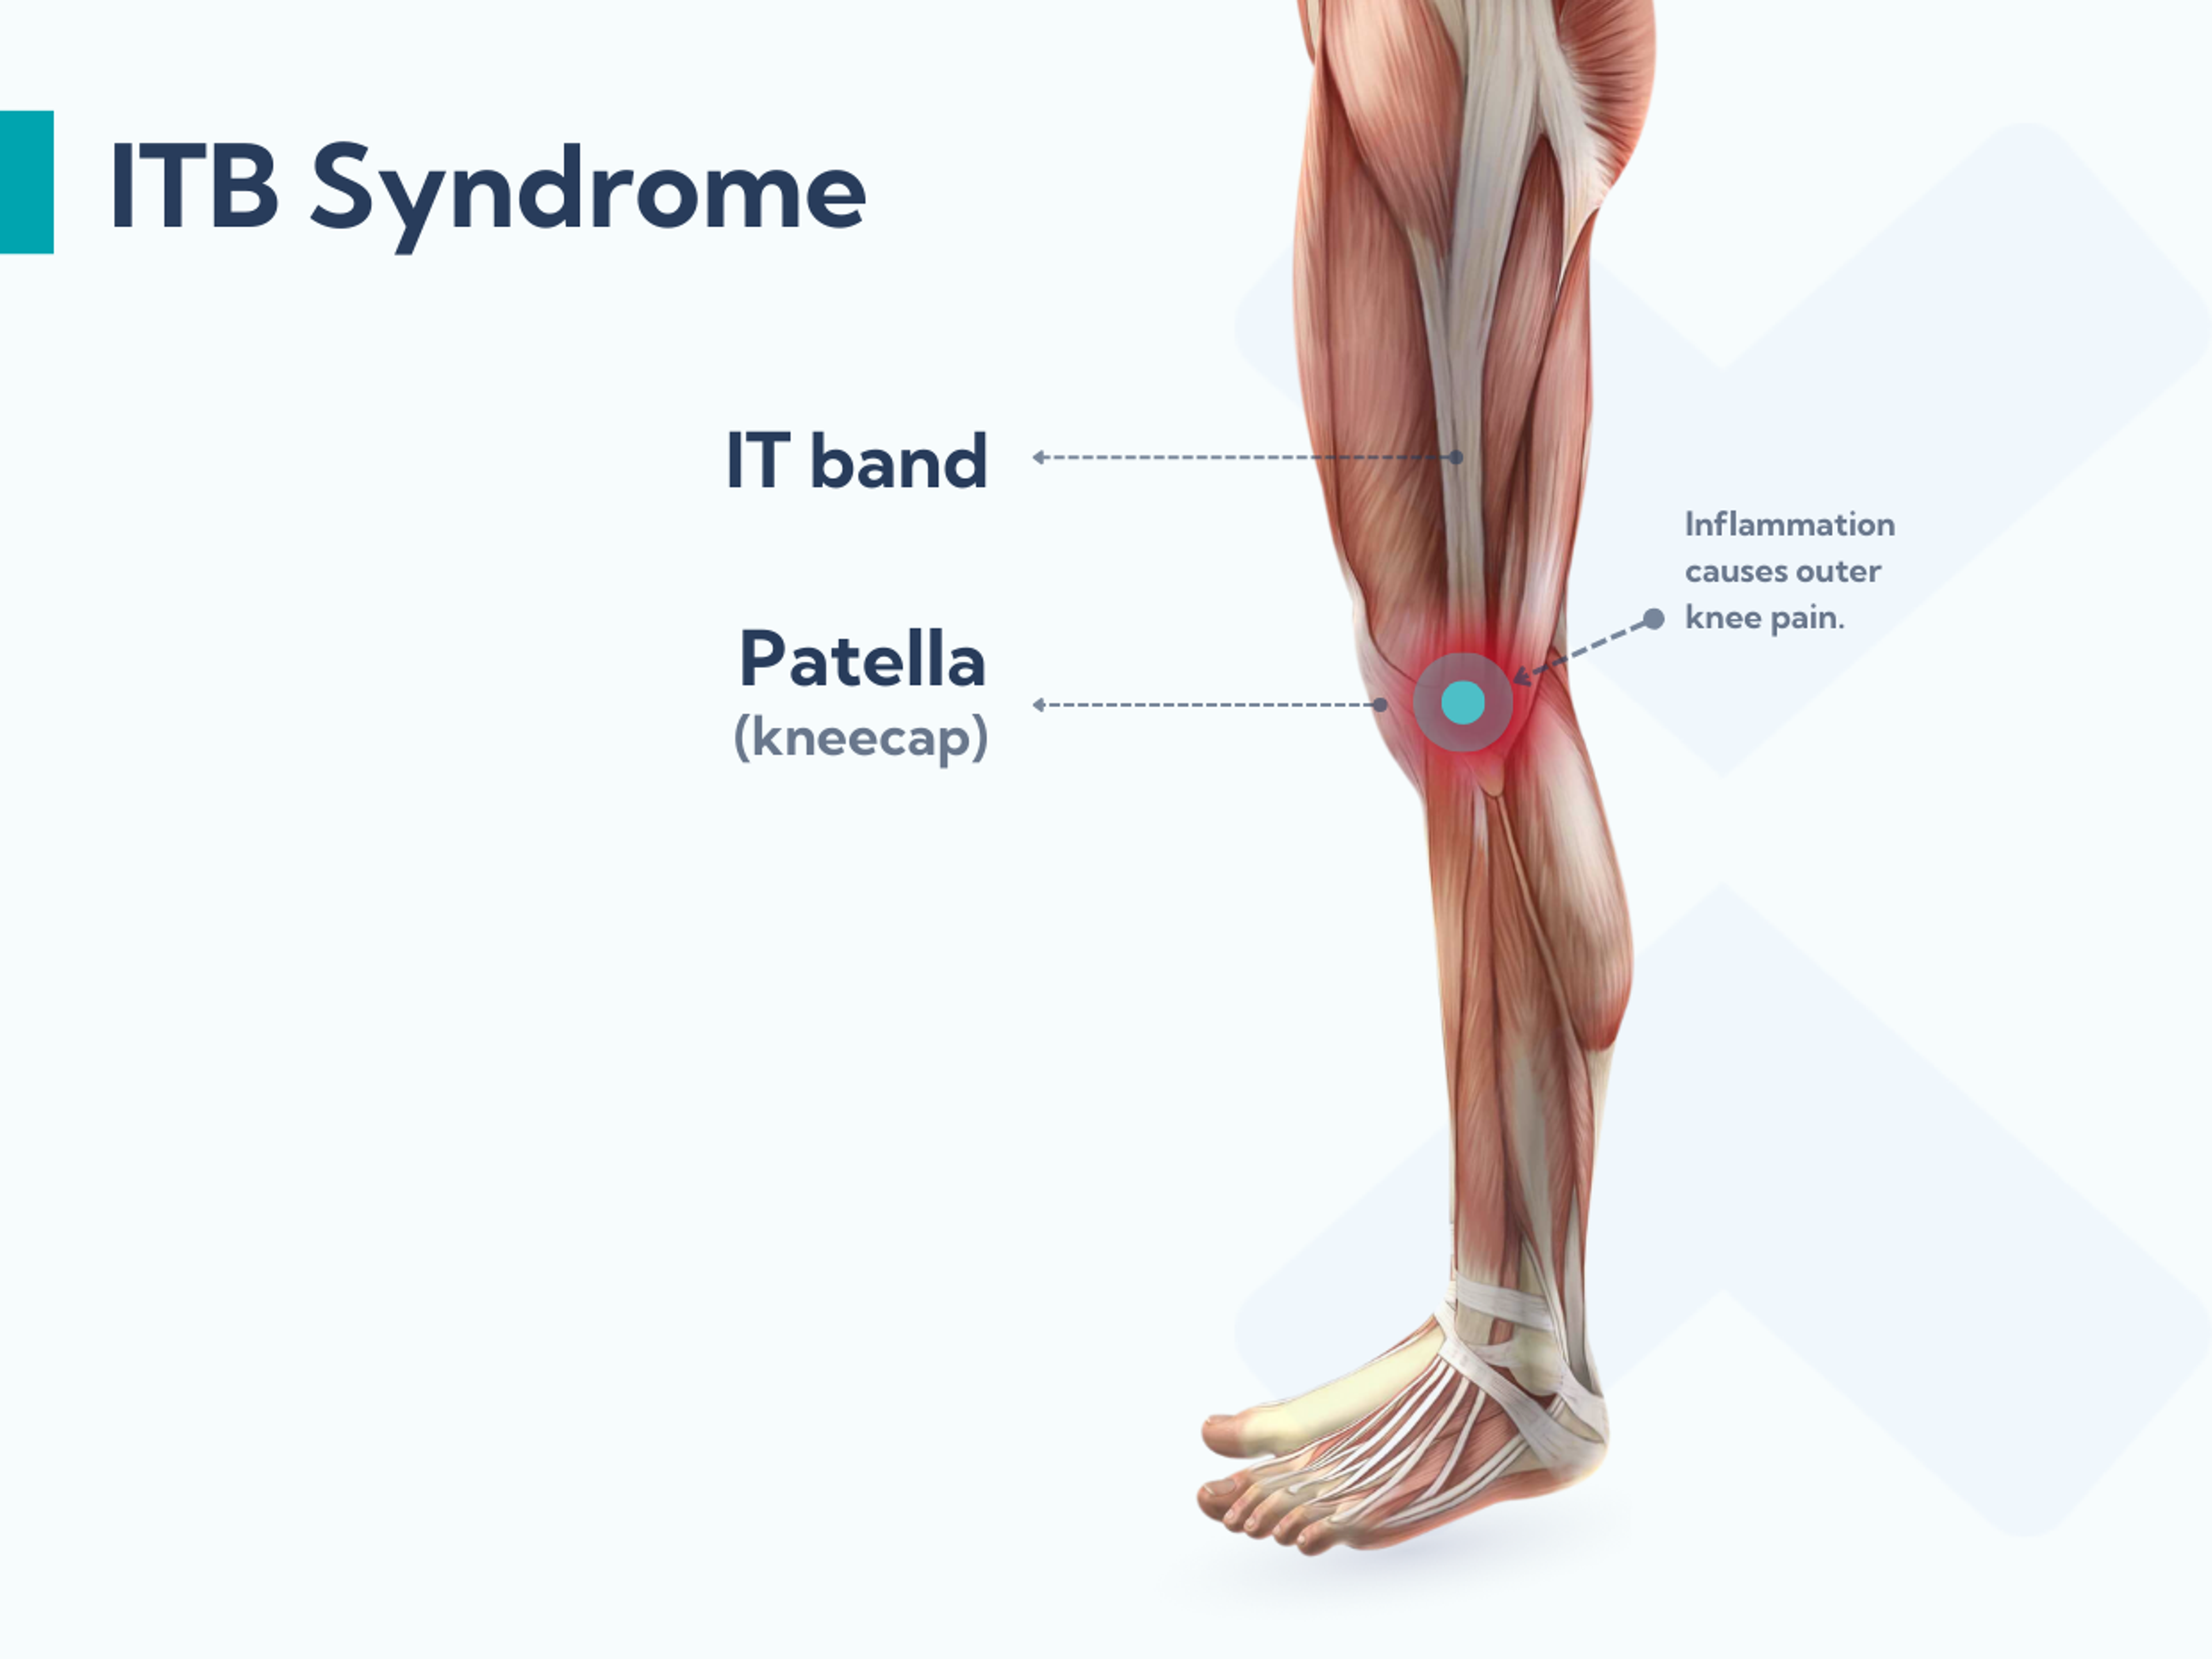 Le syndrome de la bandelette ilio-tibiale est une blessure de surmenage qui provoque une douleur dans la zone de la bandelette ilio-tibiale, autour du côté extérieur du genou.